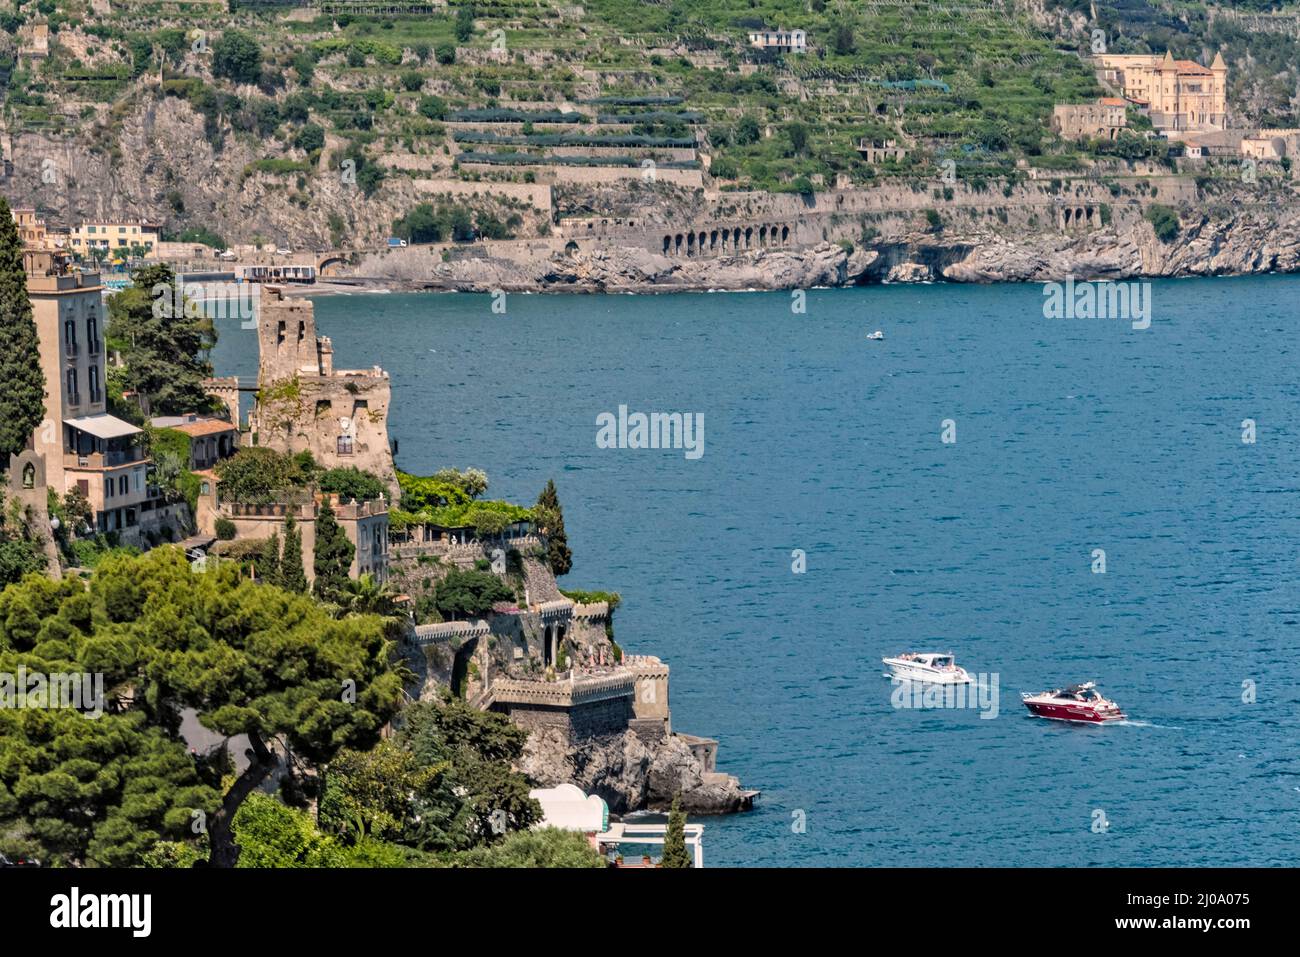 Amalfi a lo largo de la costa de Amalfi, provincia de Salerno, región de Compania, Italia Foto de stock